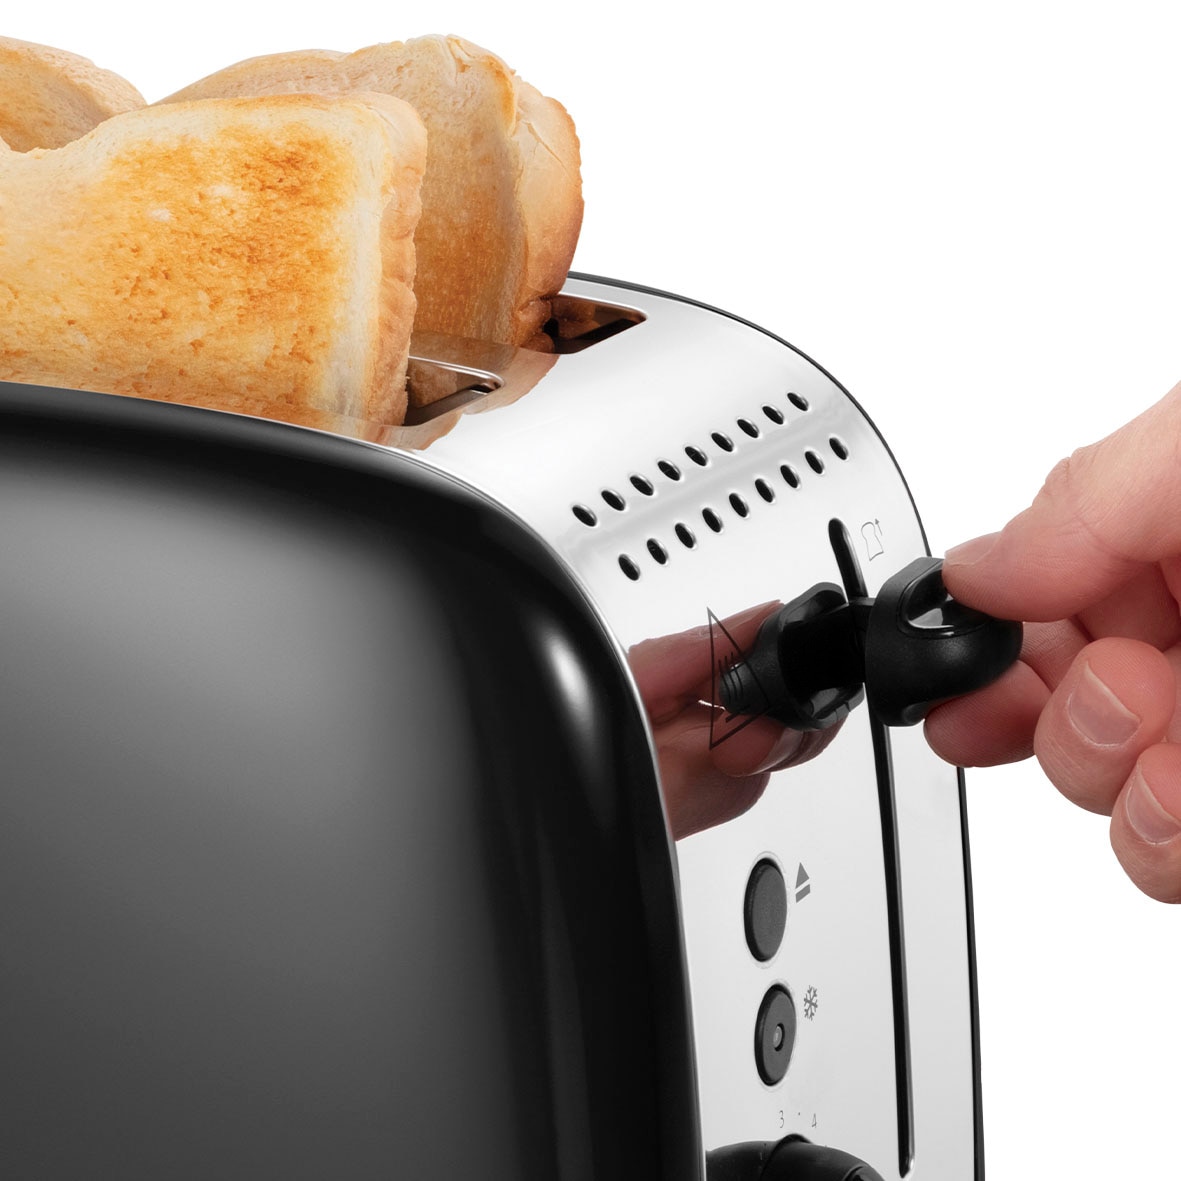 RUSSELL HOBBS Toaster »Colours Plus 26550-56«, 2 lange Schlitze, für 2 Scheiben, 1600 W